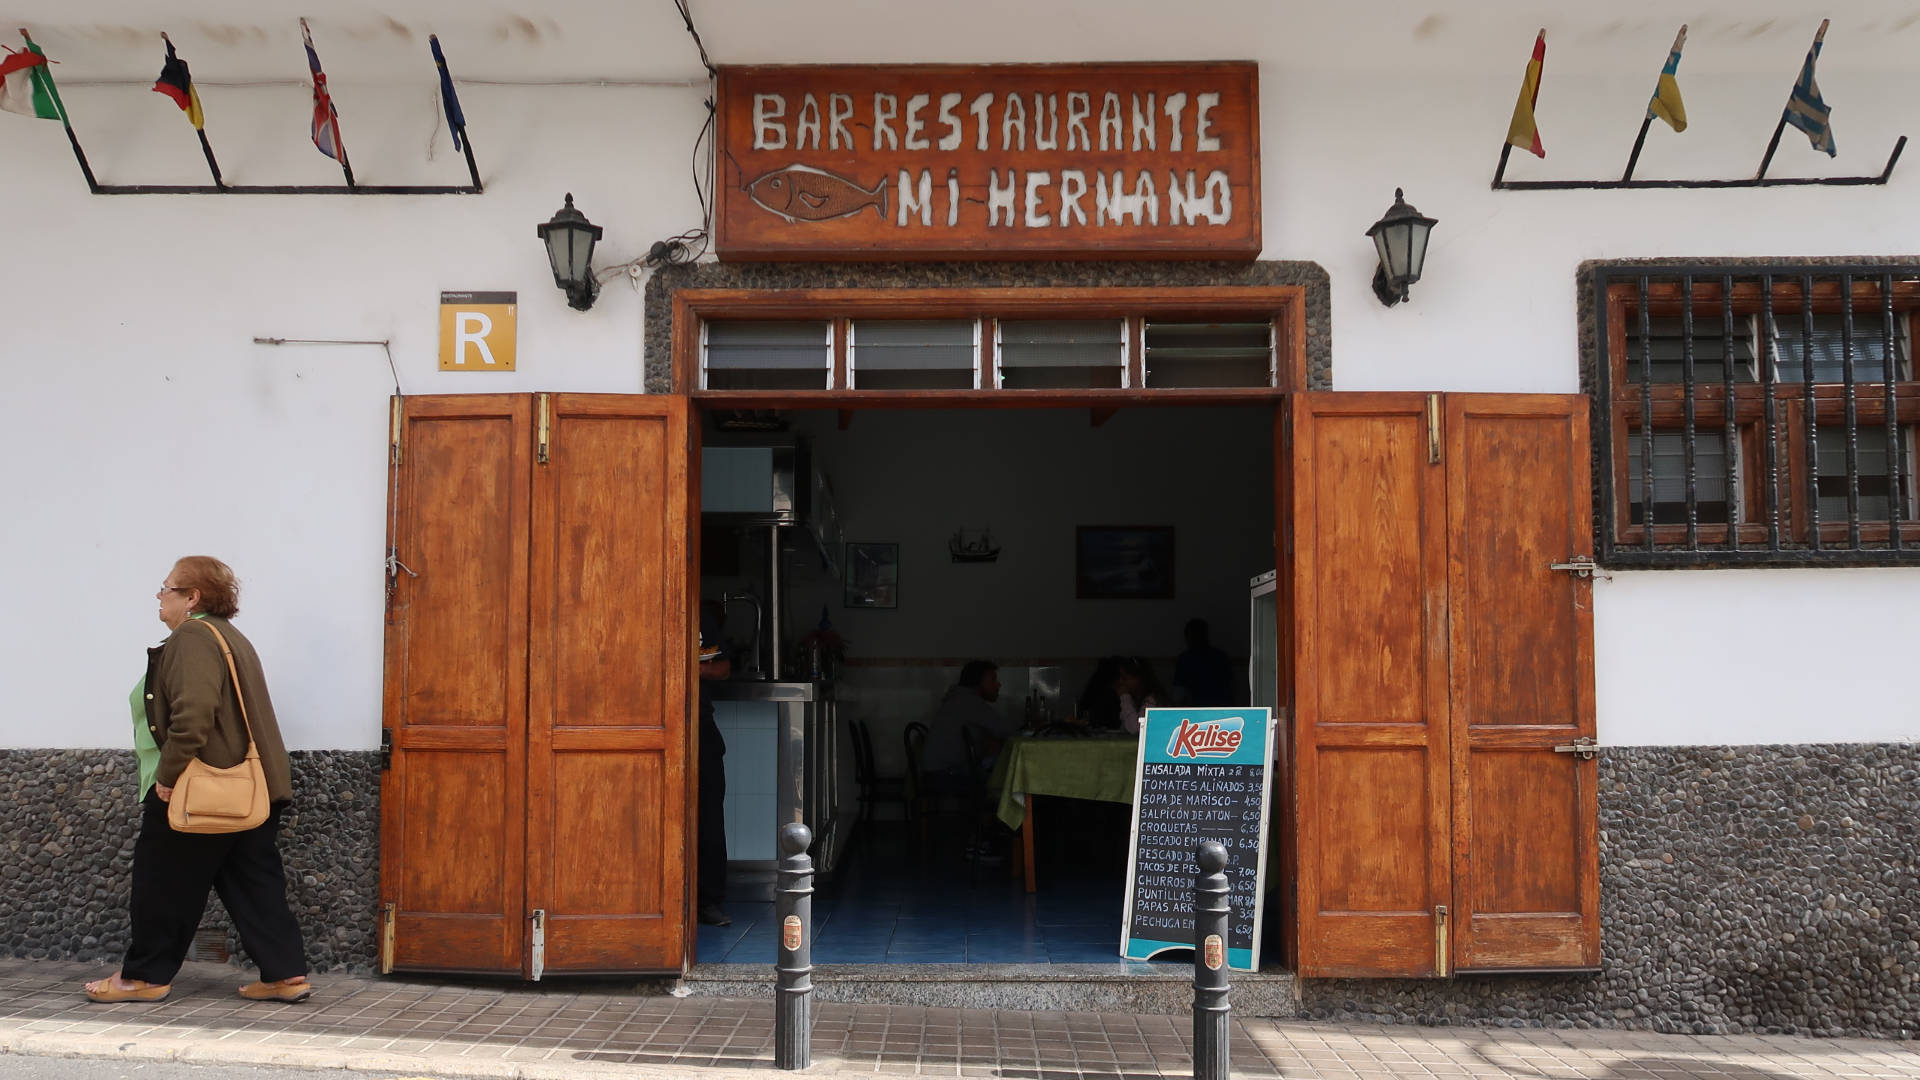 Bar Restaurante Mi Herma Puerto de las Nieves Gran Canaria.